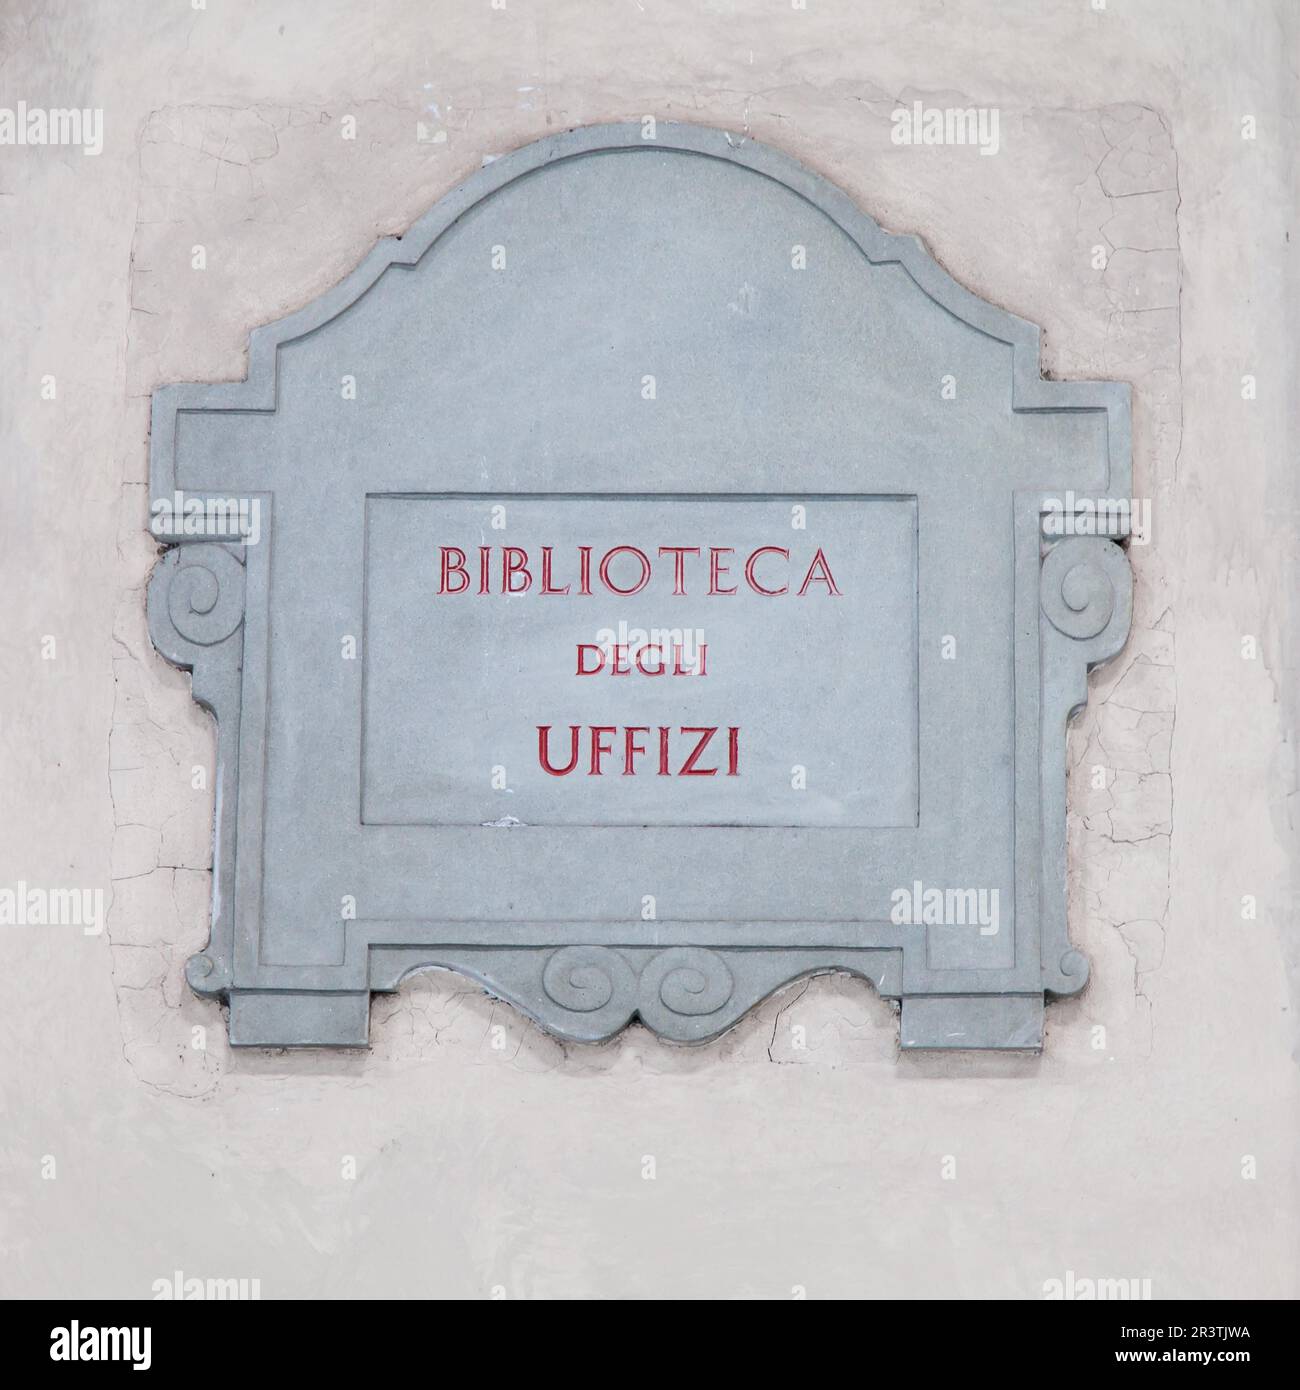 Visite à proximité de l'entrée principale de la Biblioteca degli Uffizi (bibliothèque Uffizi), Florence, Italie Banque D'Images